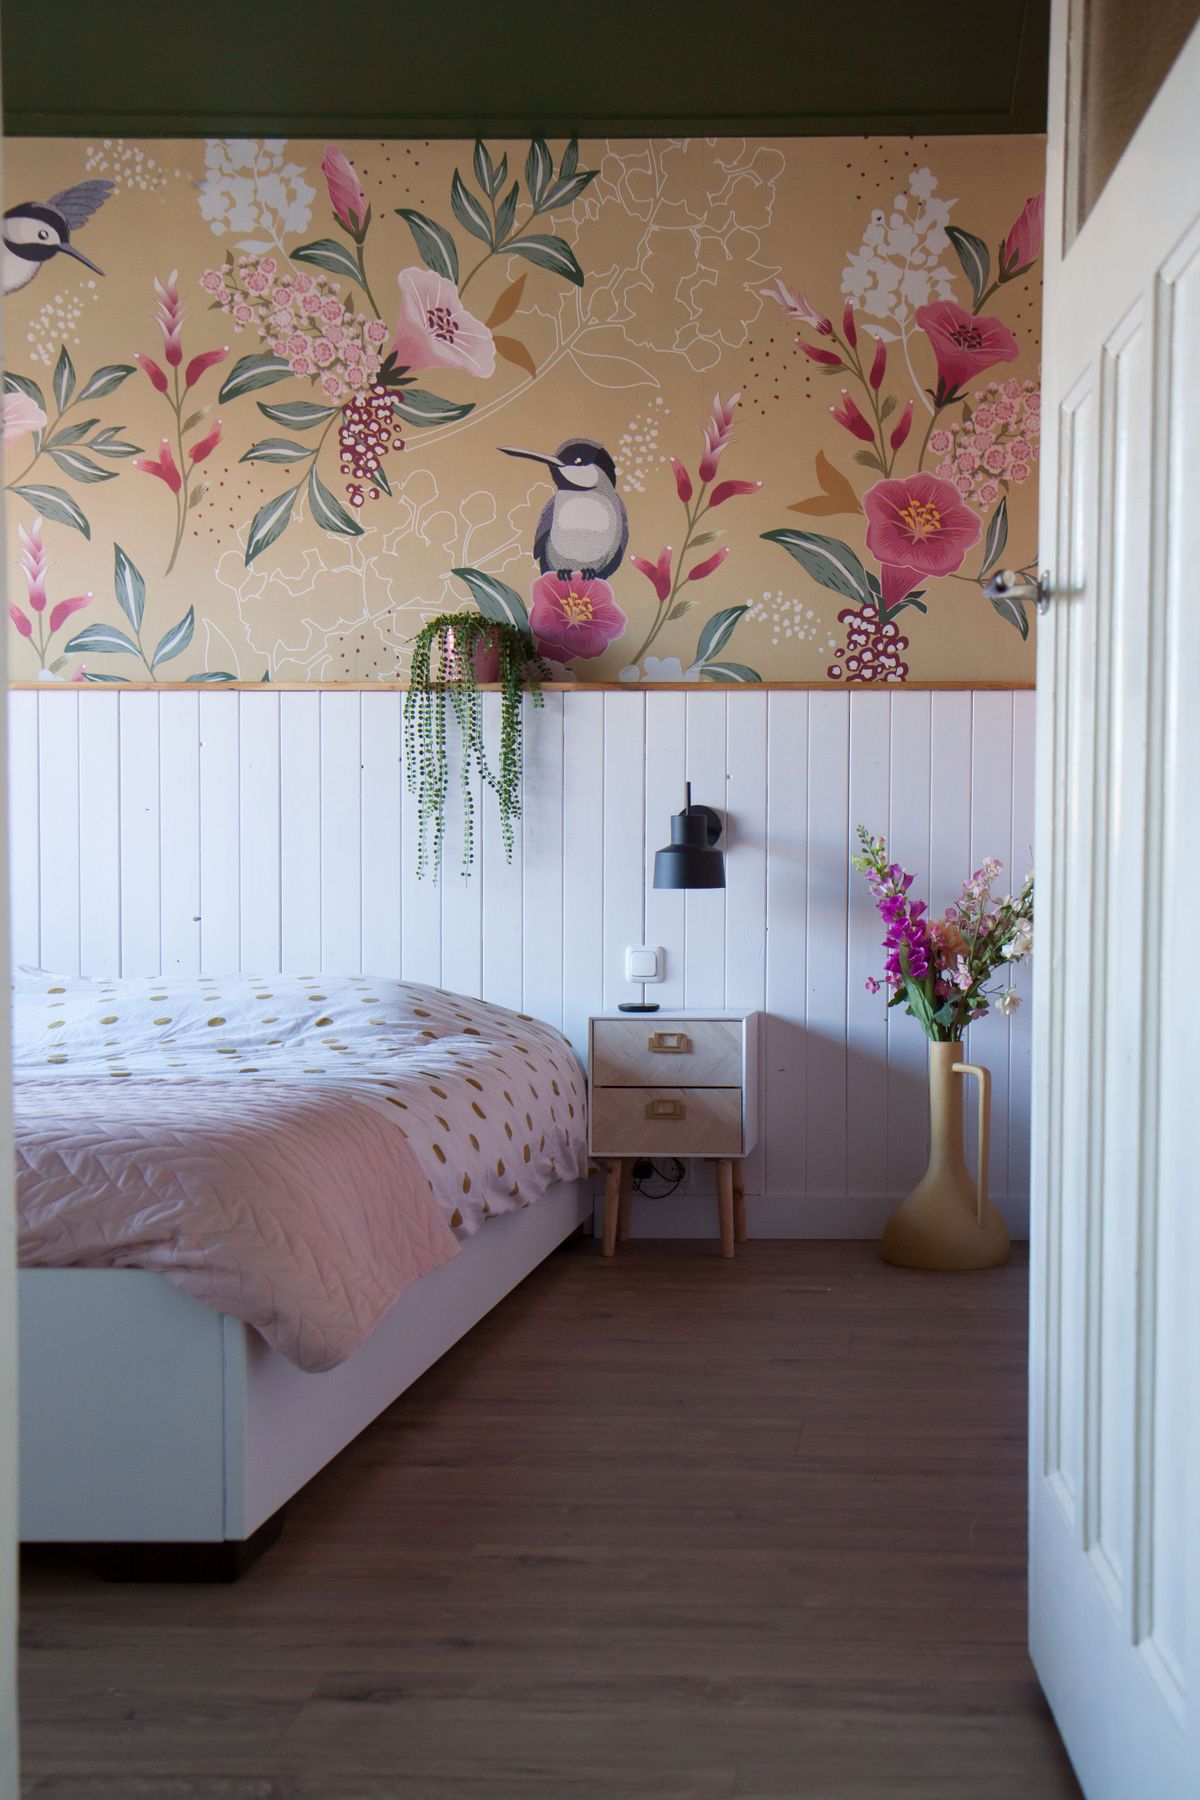 Slaapkamer met eigen ontworpen fotobehang